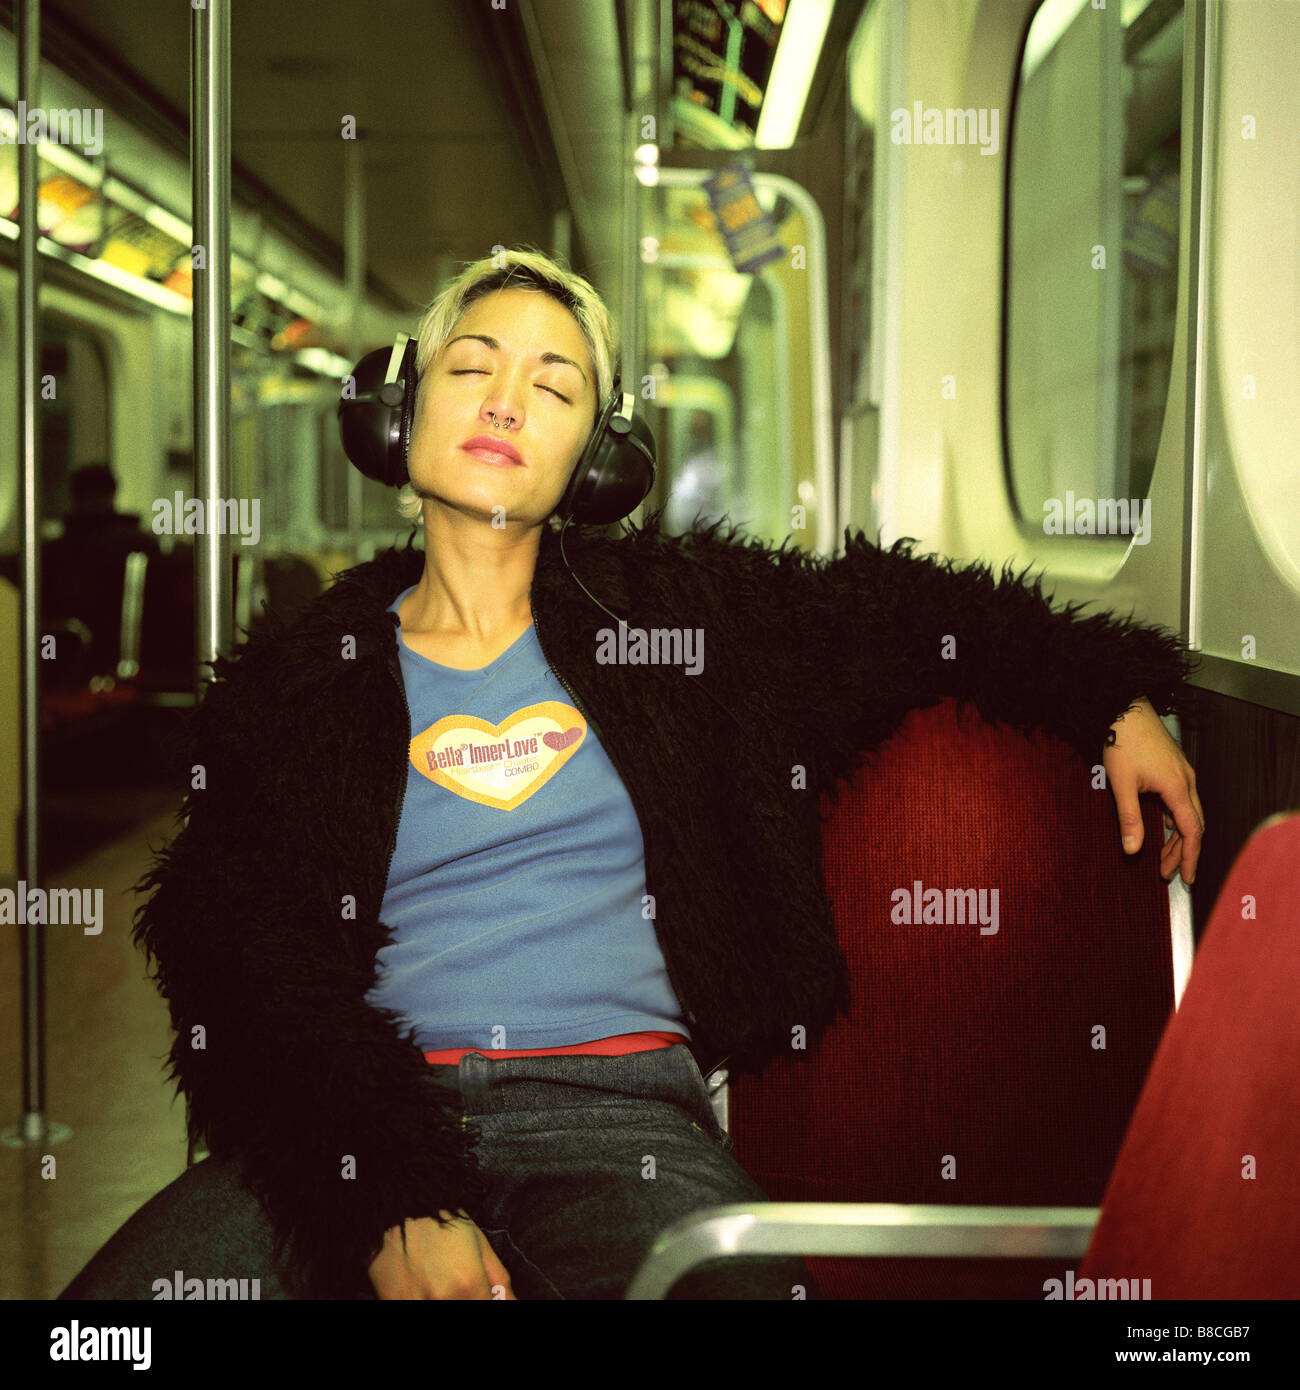 For6303 FL, Huy Lam ; Jeune femme portant des écouteurs smiling métro jusqu'à la les yeux fermés Banque D'Images